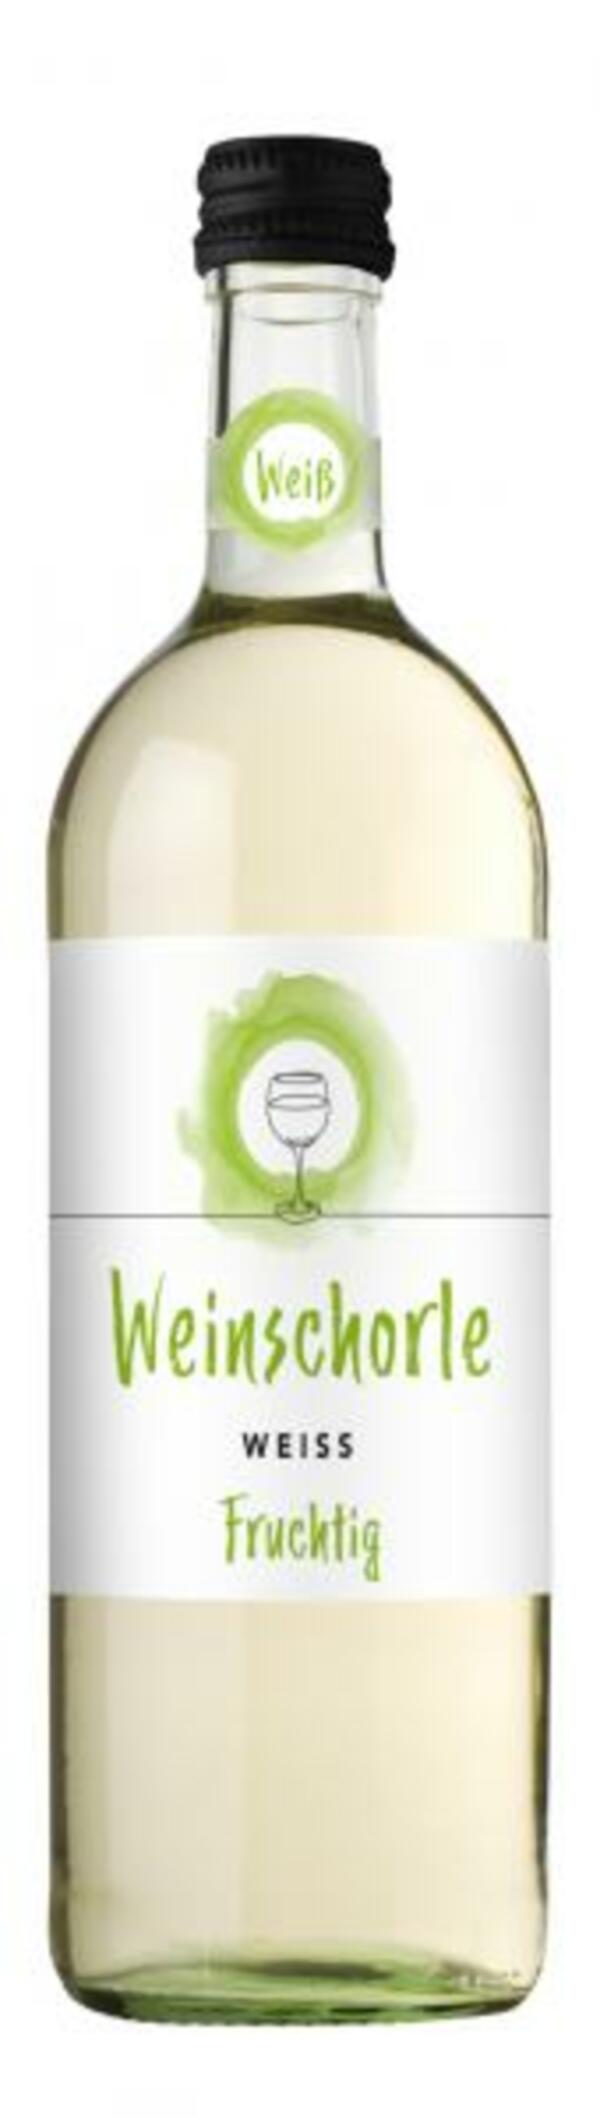 Bild 1 von Zimmermann-Graeff & Müller Weinschorle Weiß lieblich